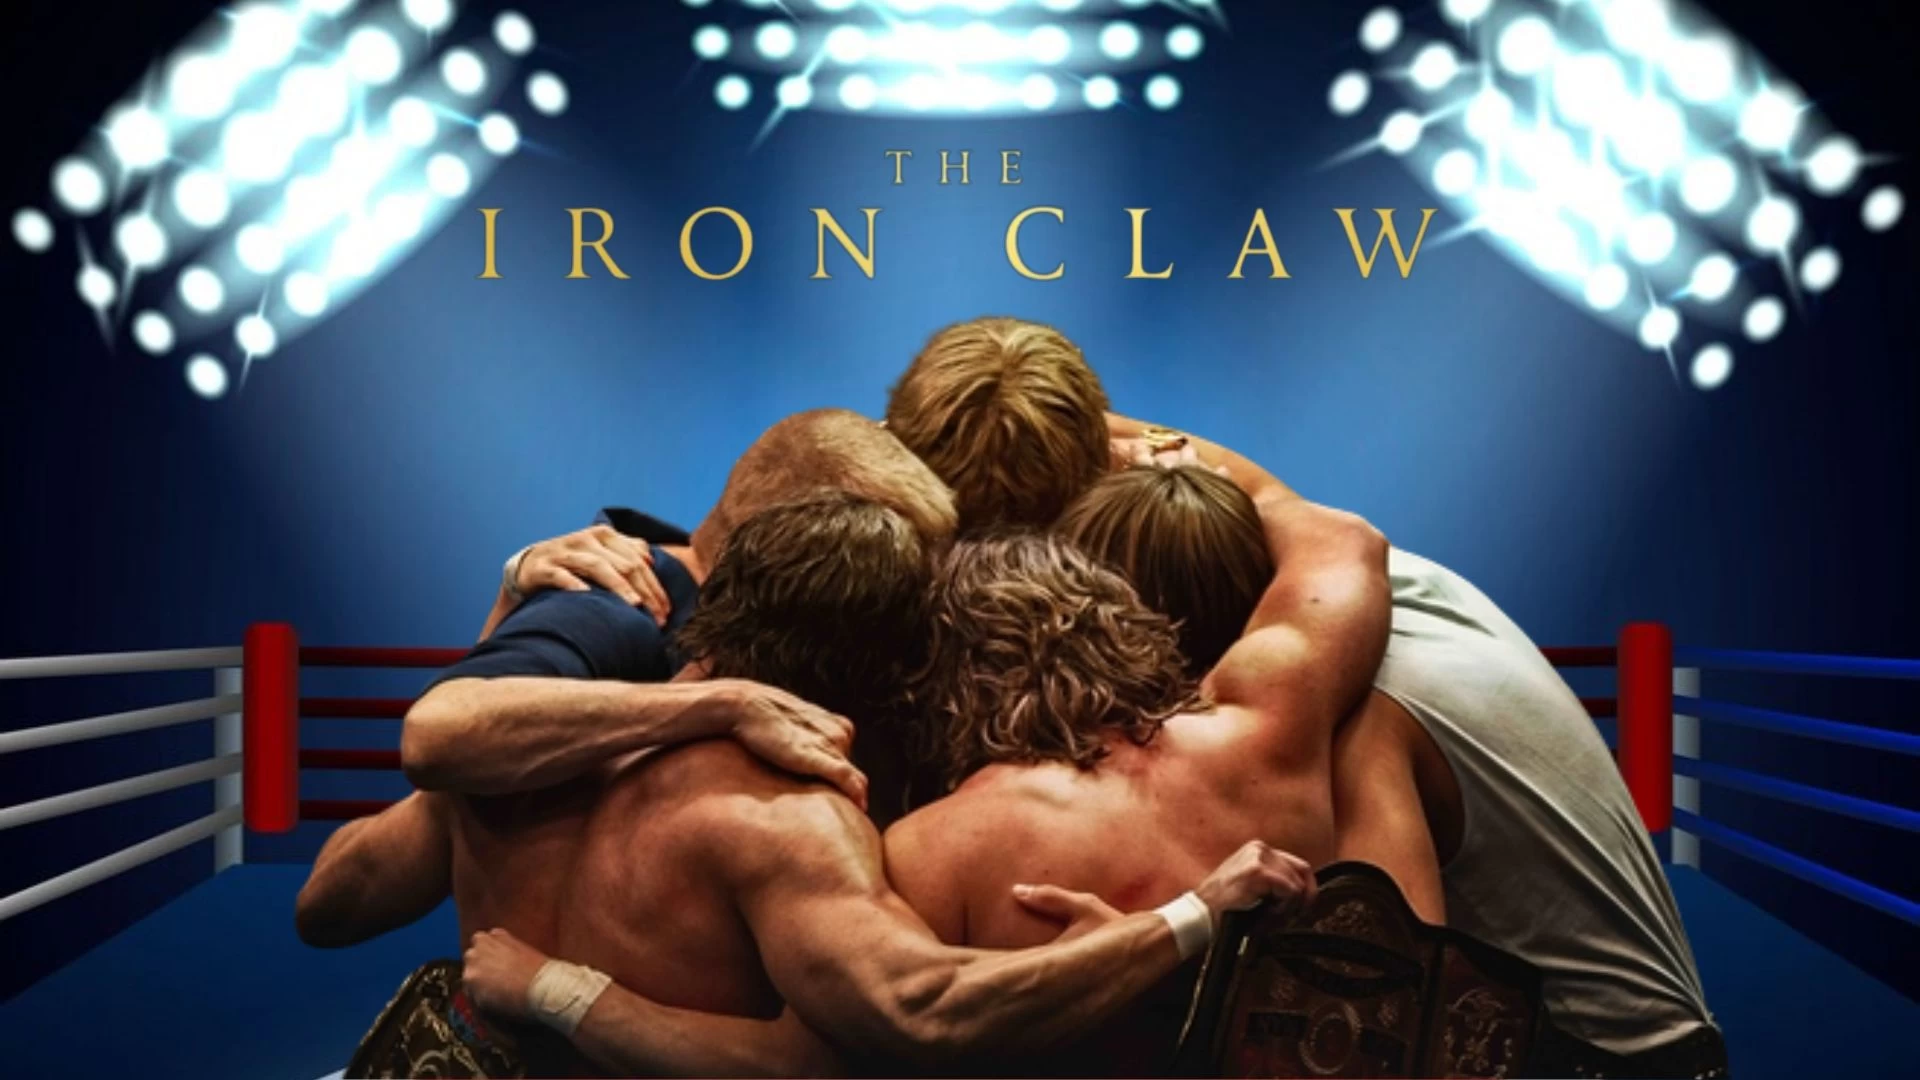 ¿La garra de hierro está basada en una historia real?  Fecha de lanzamiento, reparto y más de The Iron Claw